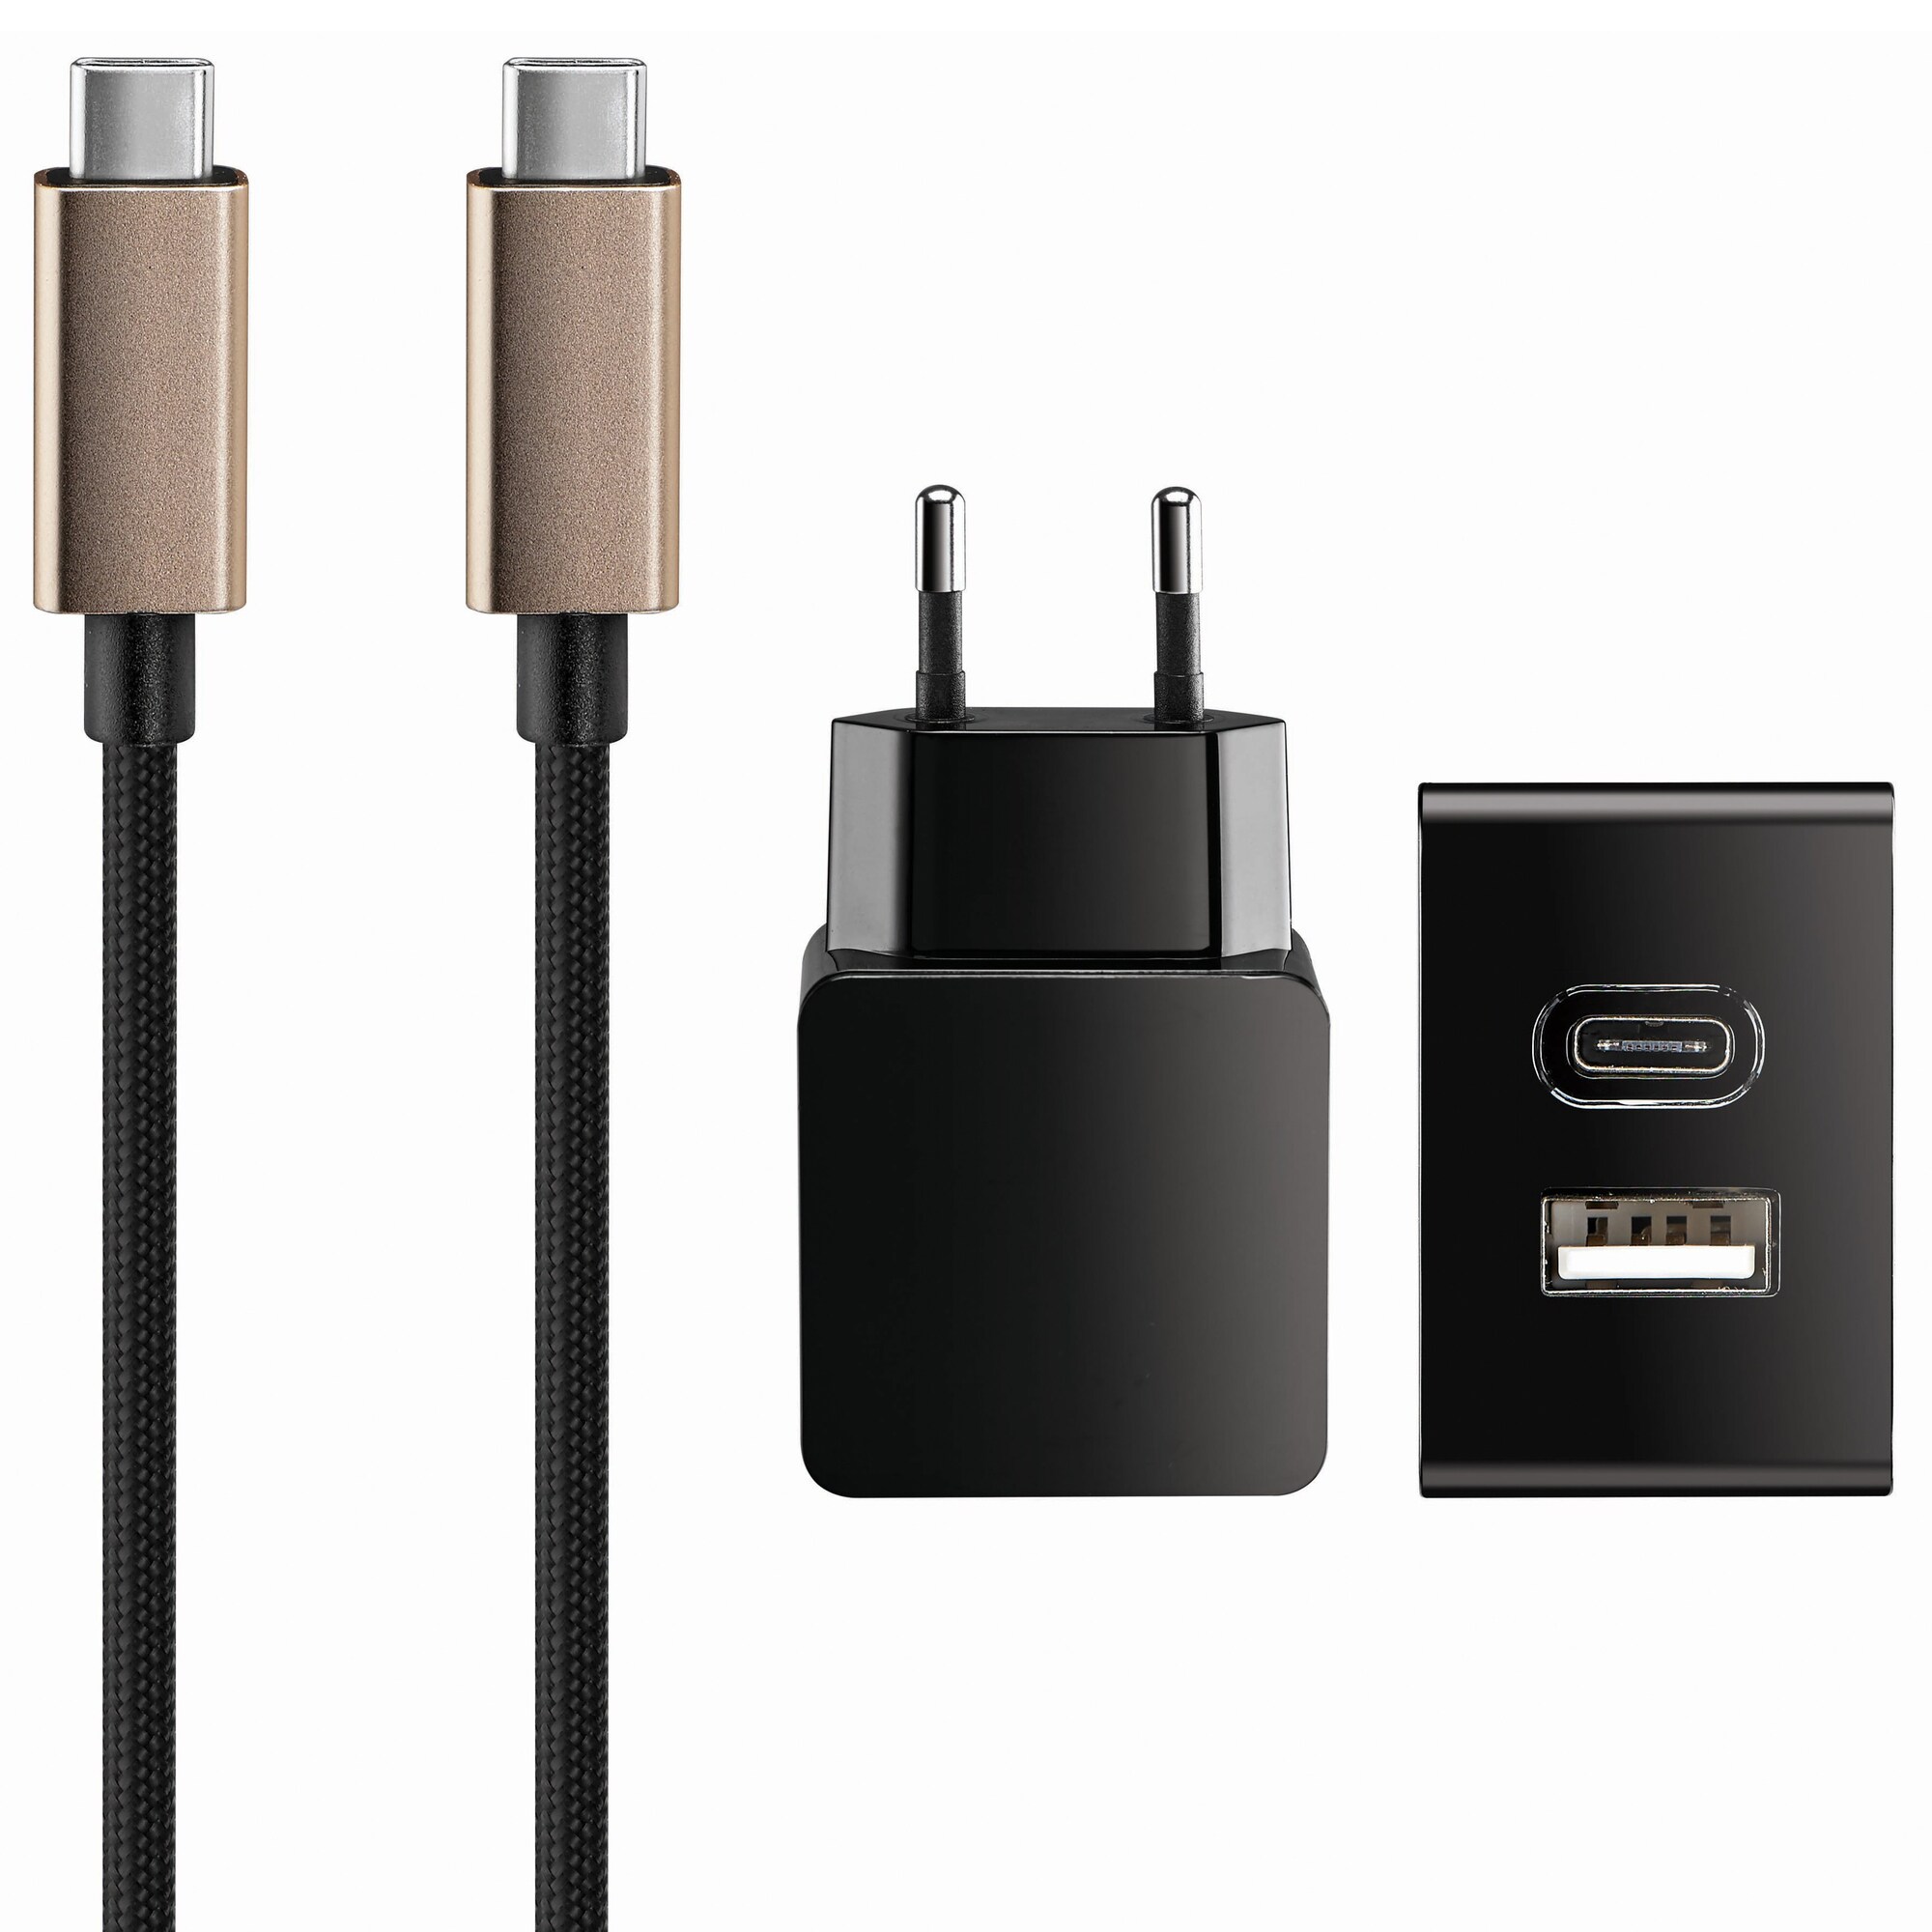 Sandstrøm USB-C verkkovirtalaturi (musta/kulta) - Gigantti verkkokauppa